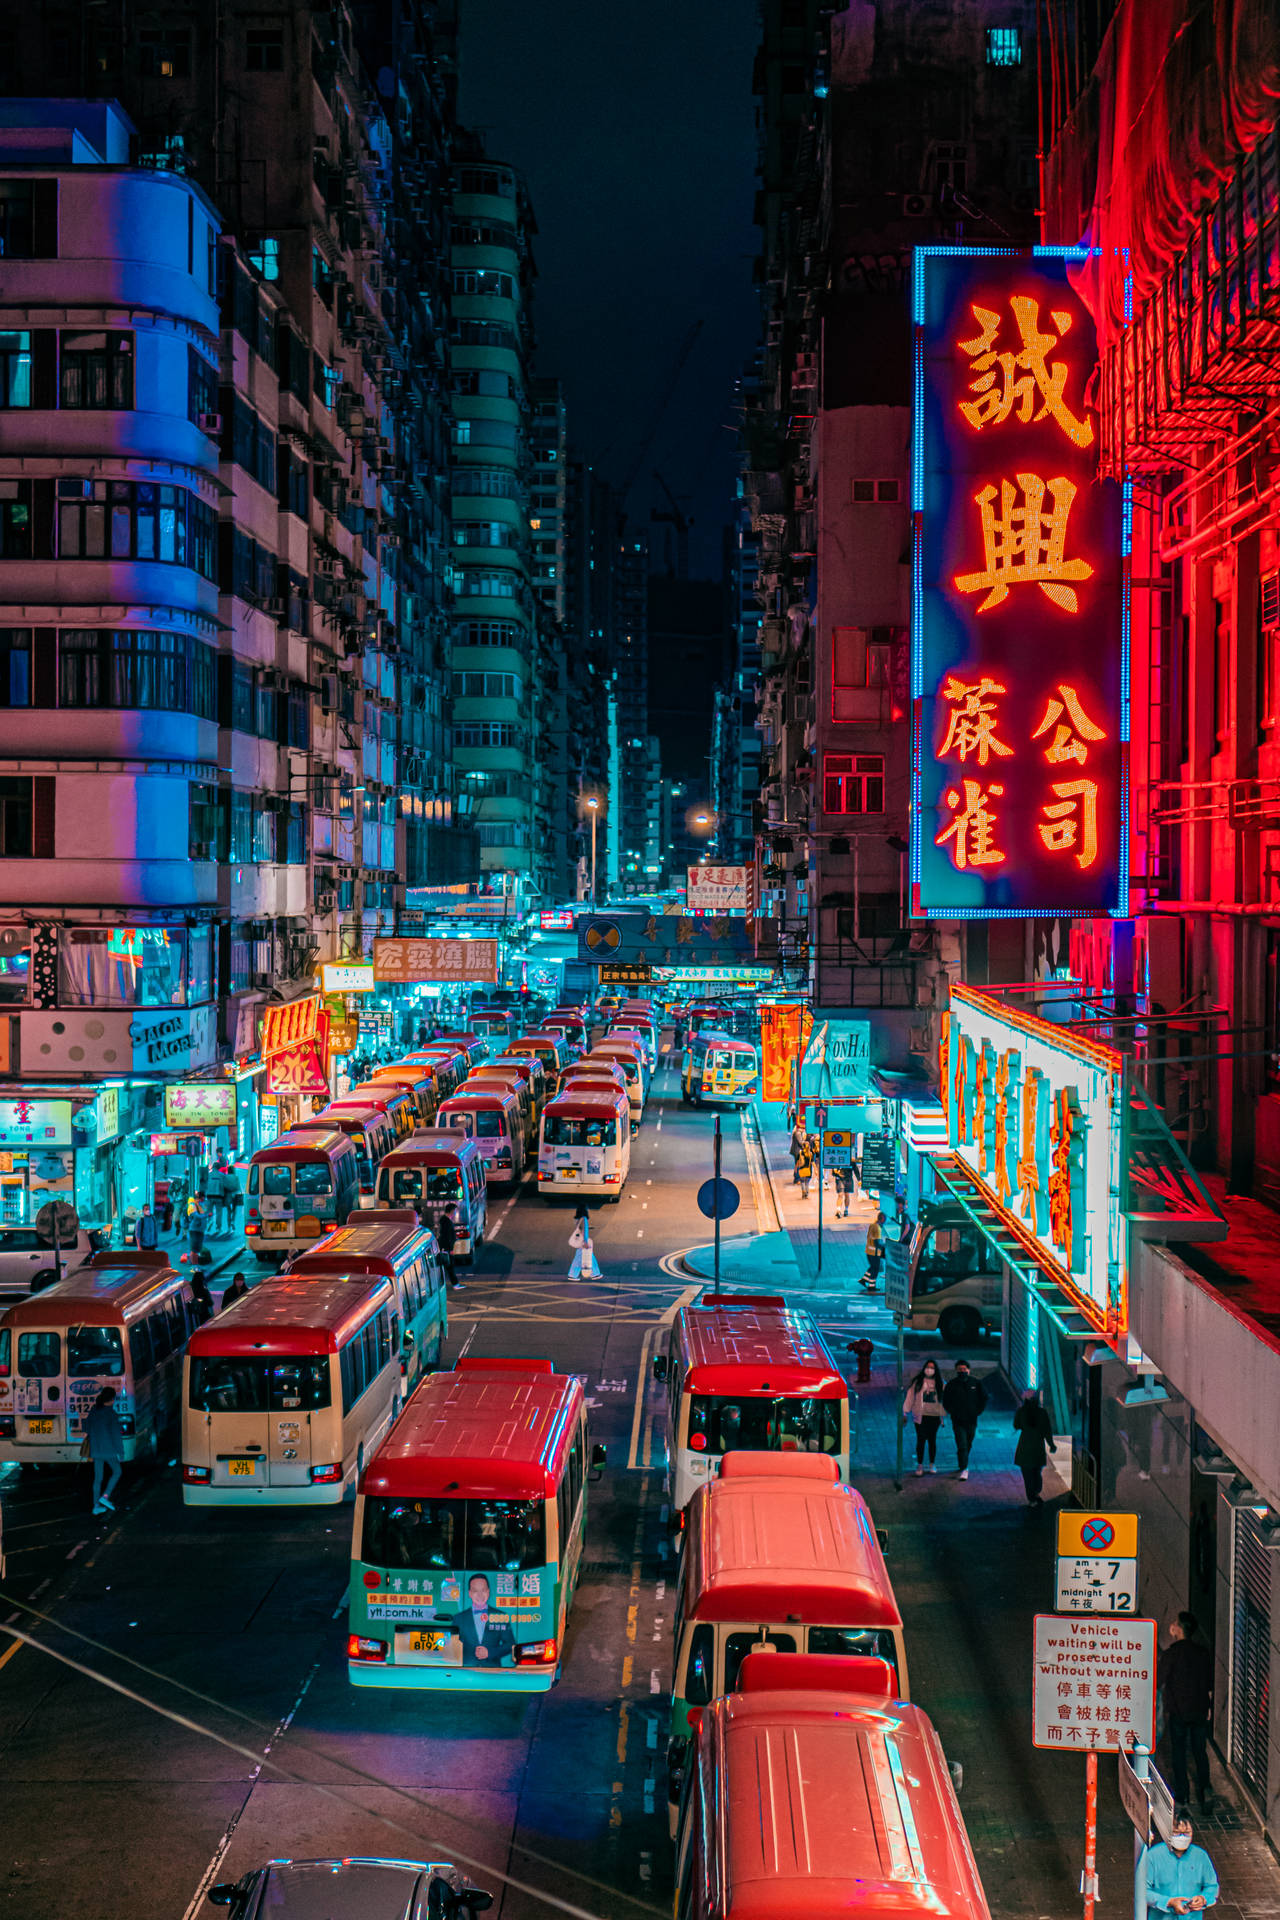 Hong Kong Red Buses